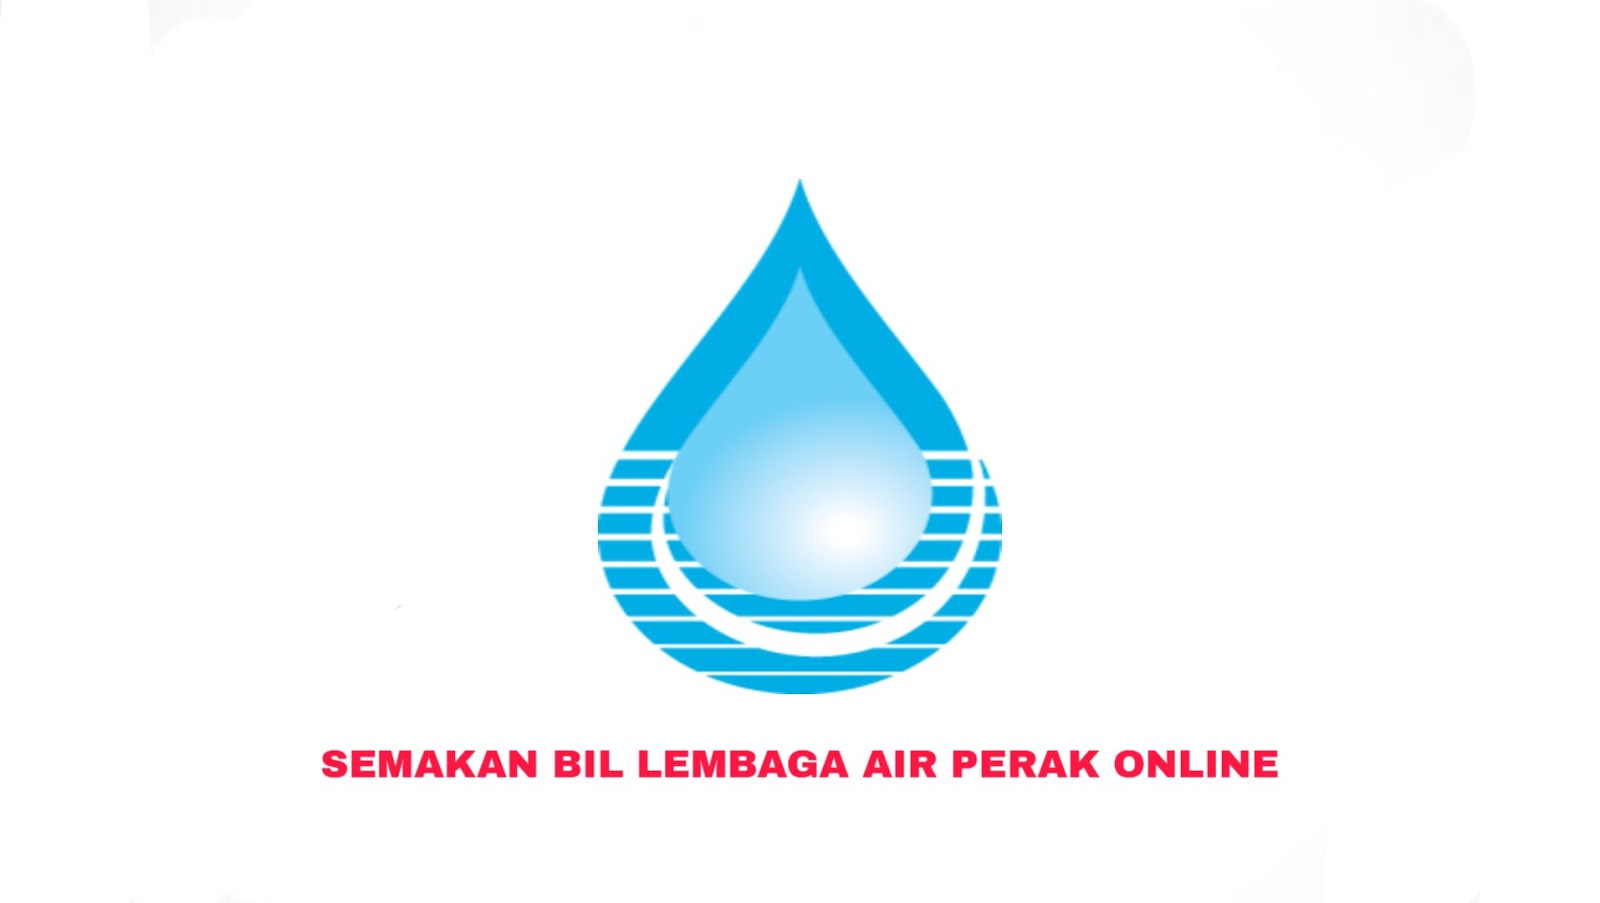 lembaga air perak logo